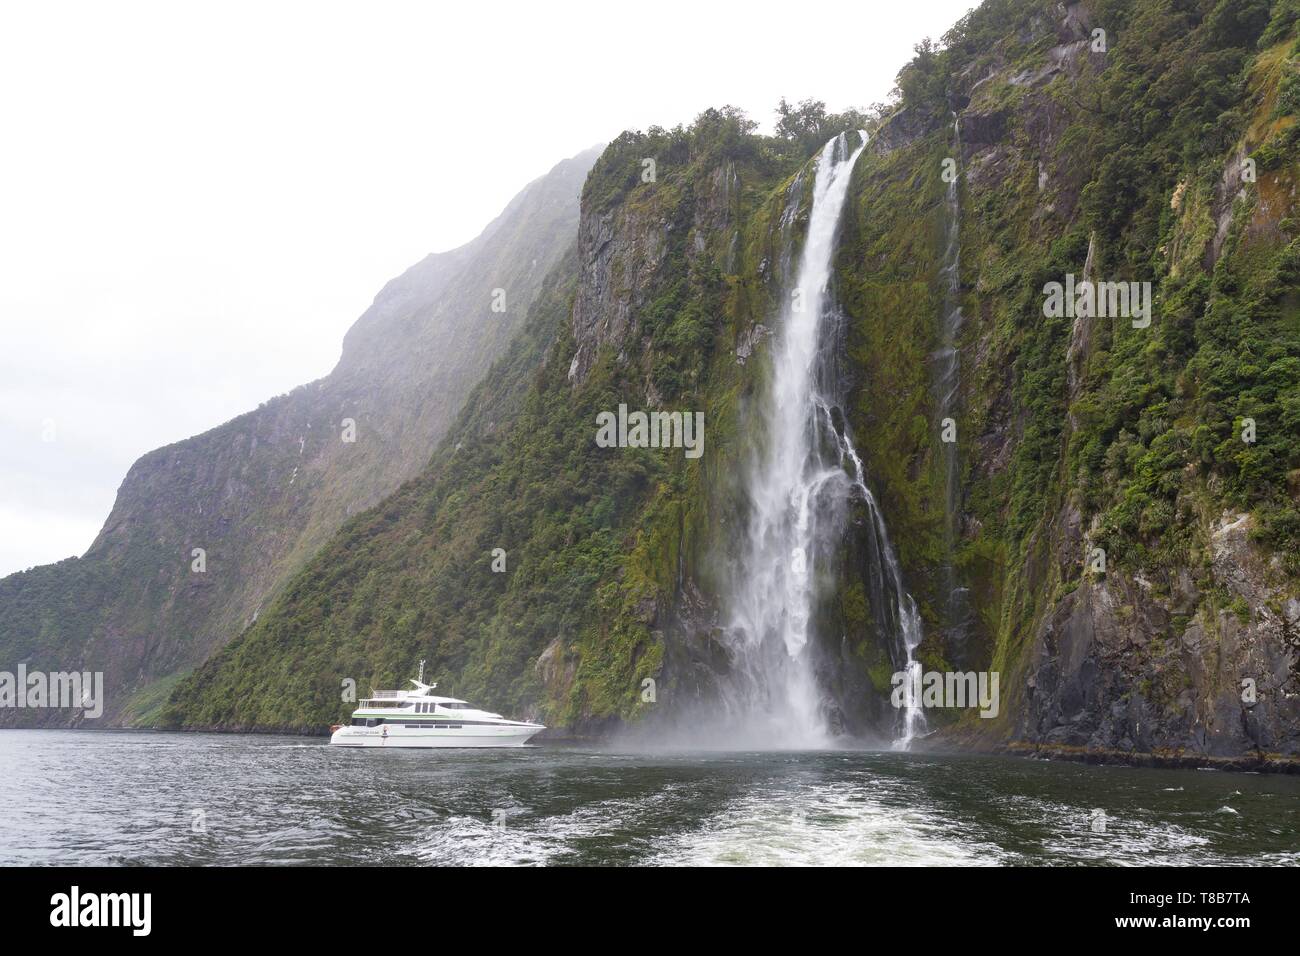 Nouvelle Zélande, île du Sud, région de Southland, Fiordland National Park, UNESCO World Heritage Site, cascade de Milford Sound Banque D'Images